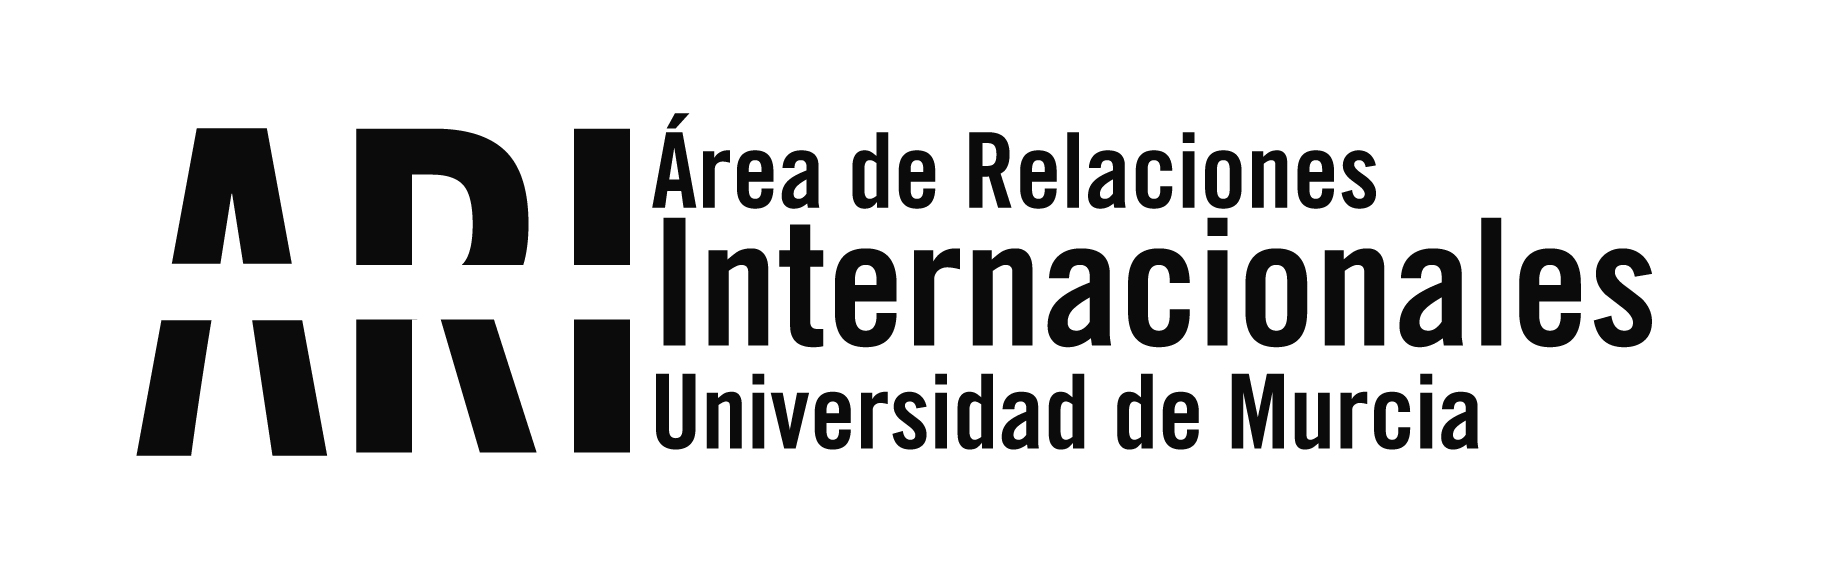 Reunión en León para la Formación en la plataforma moodle del Proyecto Experes - Área de Relaciones Internacionales